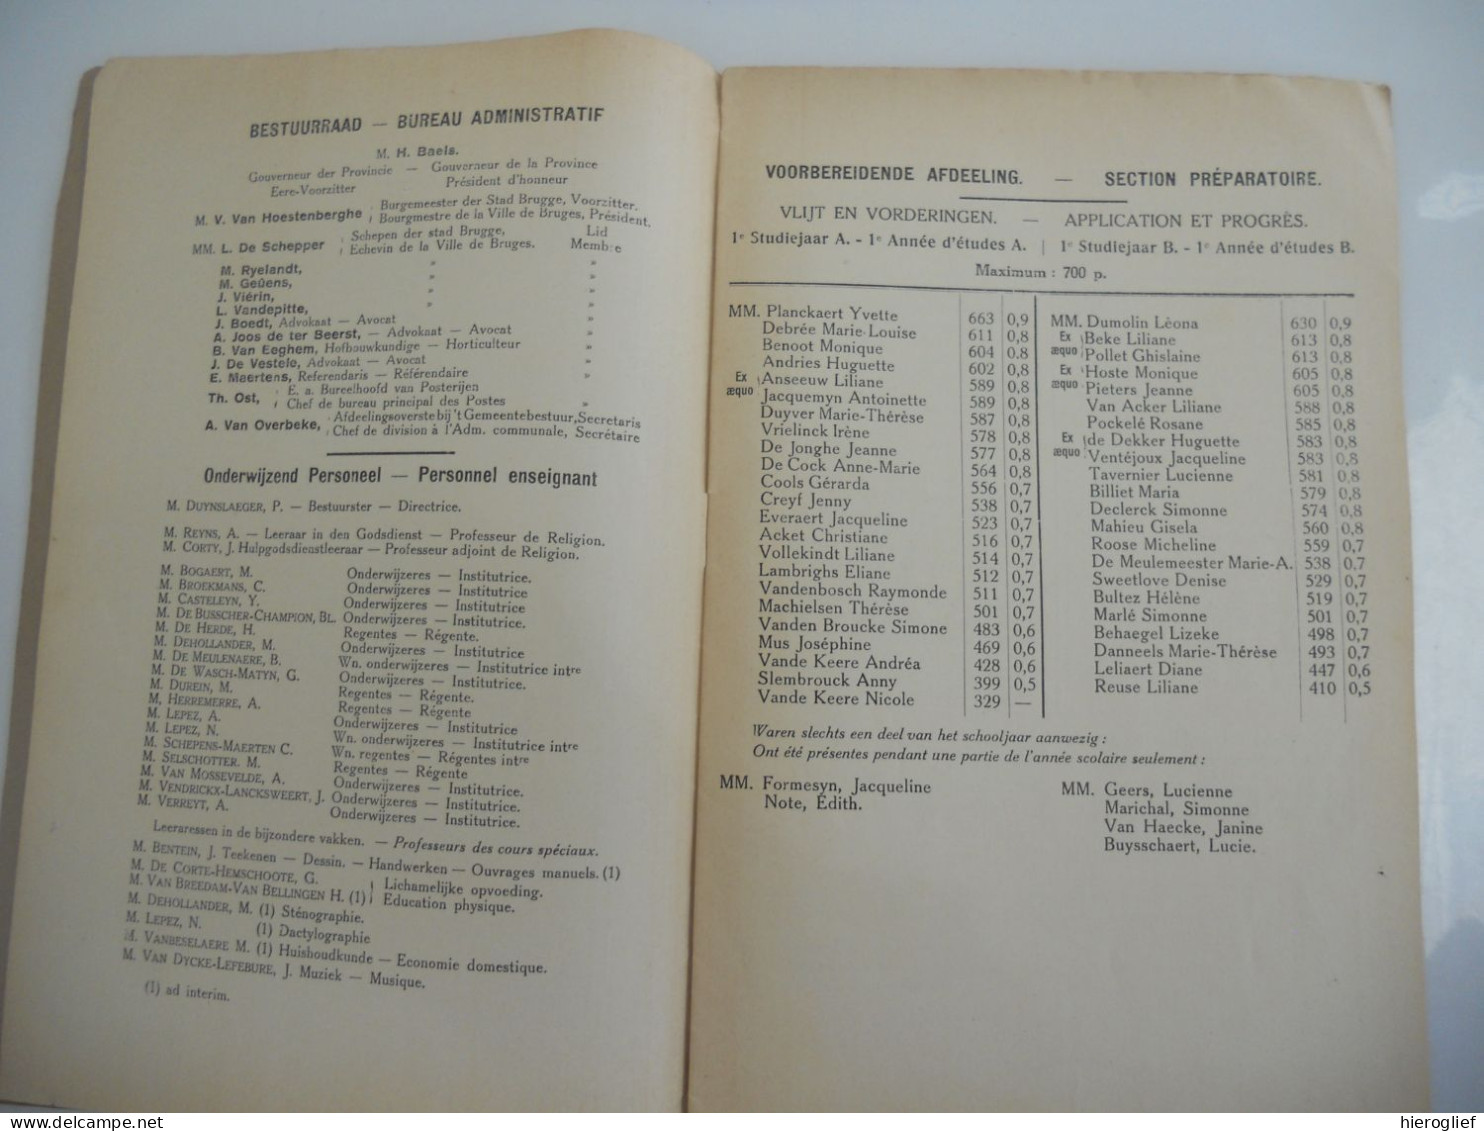 Rijksmiddelbare Meisjesschool En Handelsafdeling Spiegelrei Brugge Plechtige Prijsuitdeeling 1934 Palmares - Geschichte